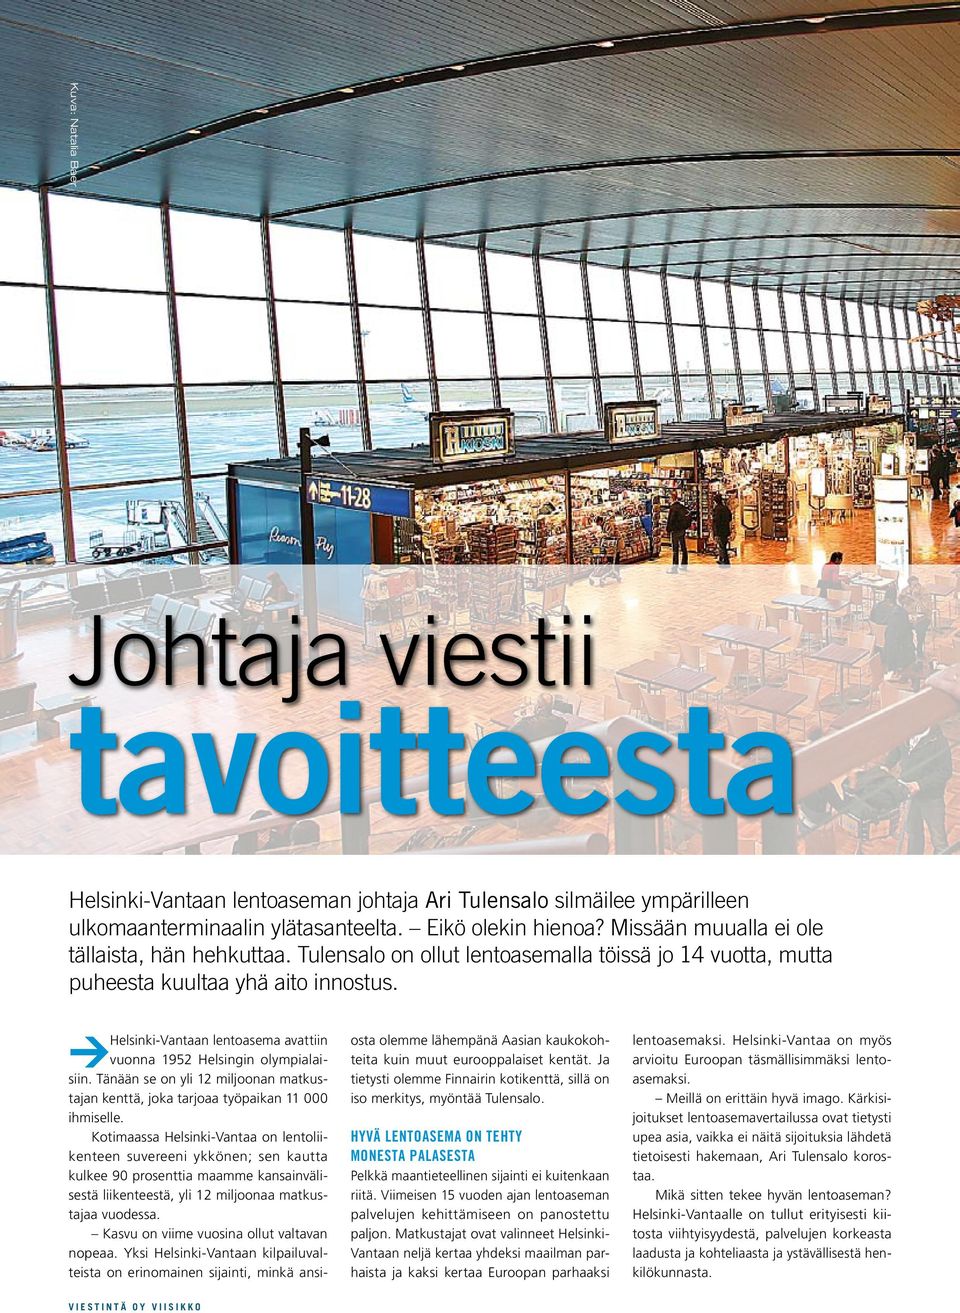 Helsinki-Vantaan lentoasema avattiin vuonna 1952 Helsingin olympialaisiin. Tänään se on yli 12 miljoonan matkustajan kenttä, joka tarjoaa työpaikan 11 000 ihmiselle.